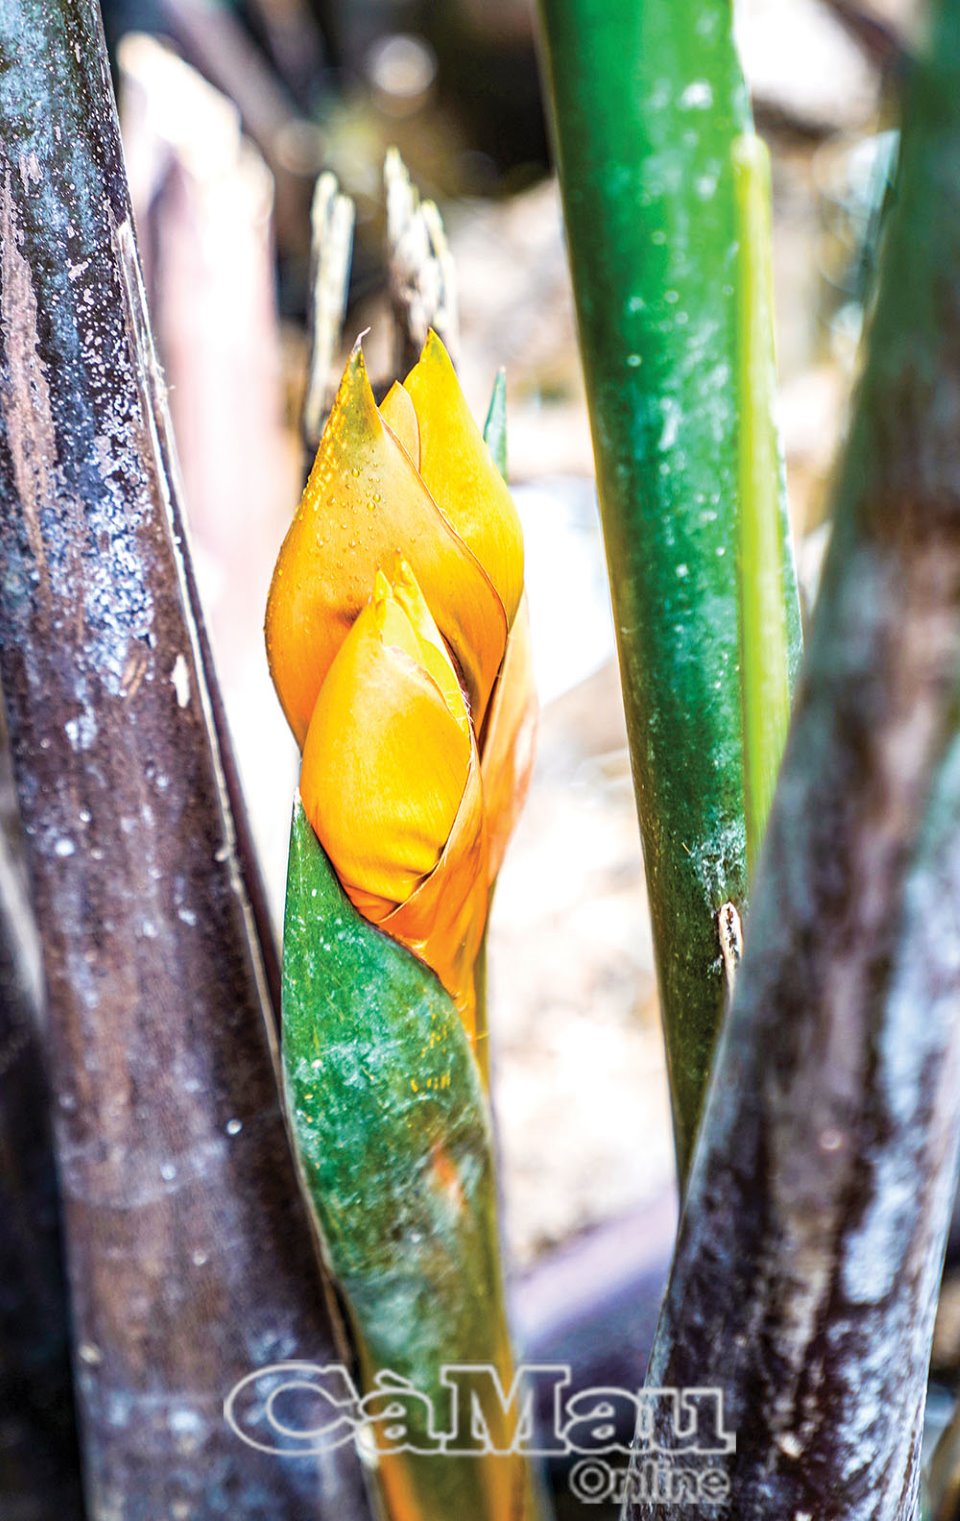 Thứ cây mọc dại dầm mình dưới nước vươn lá lên trời ở Cà Mau ra hoa đẹp mê tơi, cho trái đặc sản - Ảnh 2.